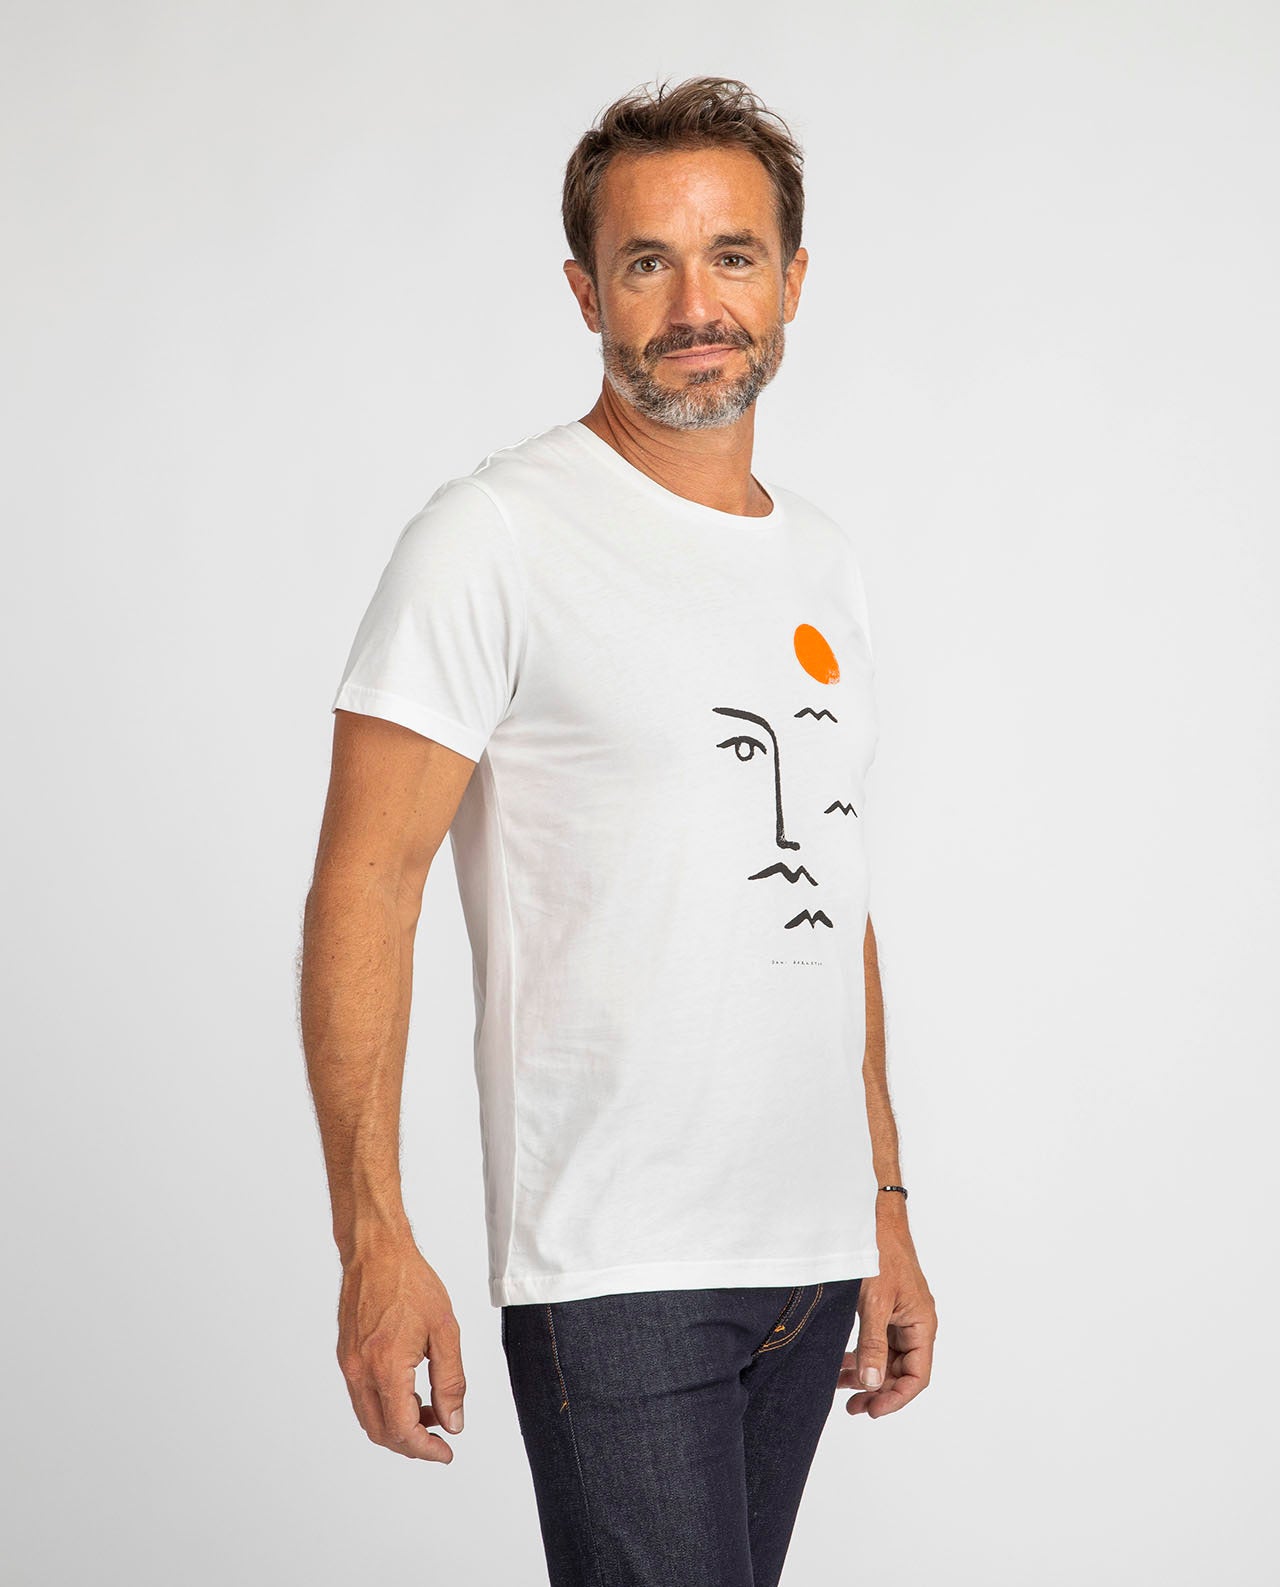 marché commun bask in the sun t-shirt homme imprimé artiste éco-responsable éthique coton biologique blanc